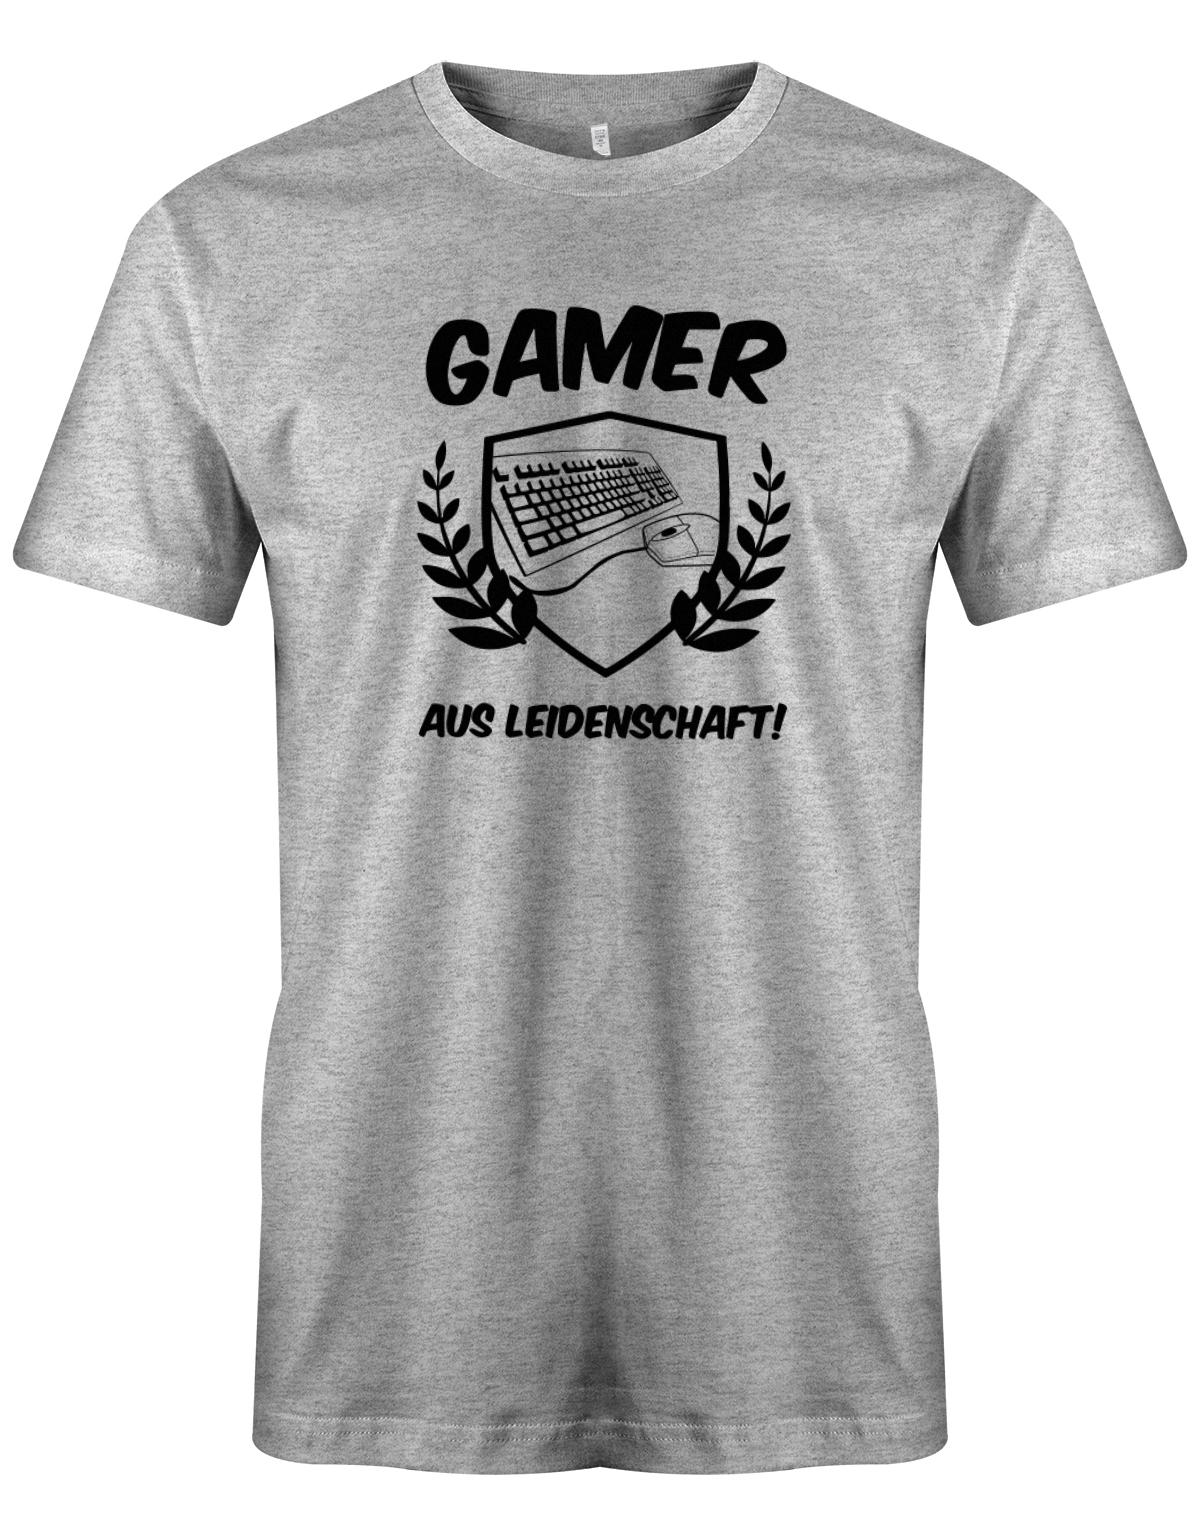 Gamer-Aus-leidenschaft-Herren-Gamer-Shirt-Grau